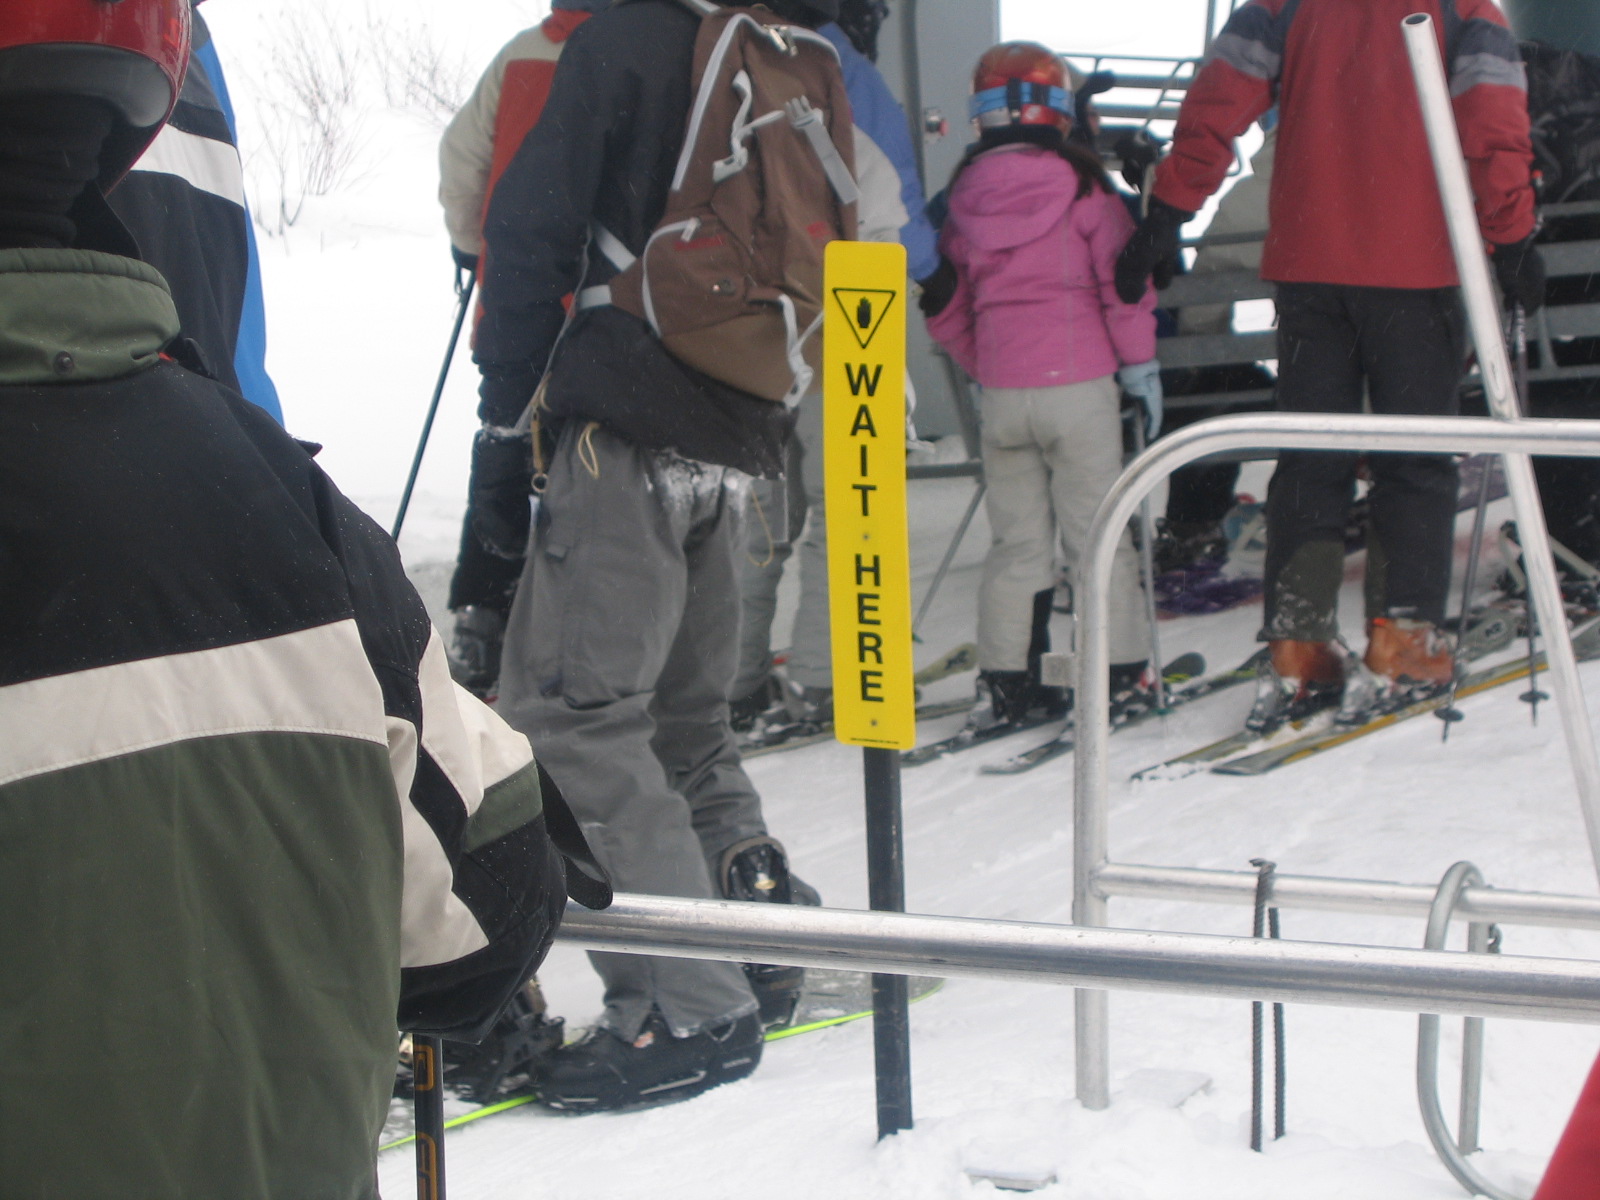 Wait Here Ski Lift Sign